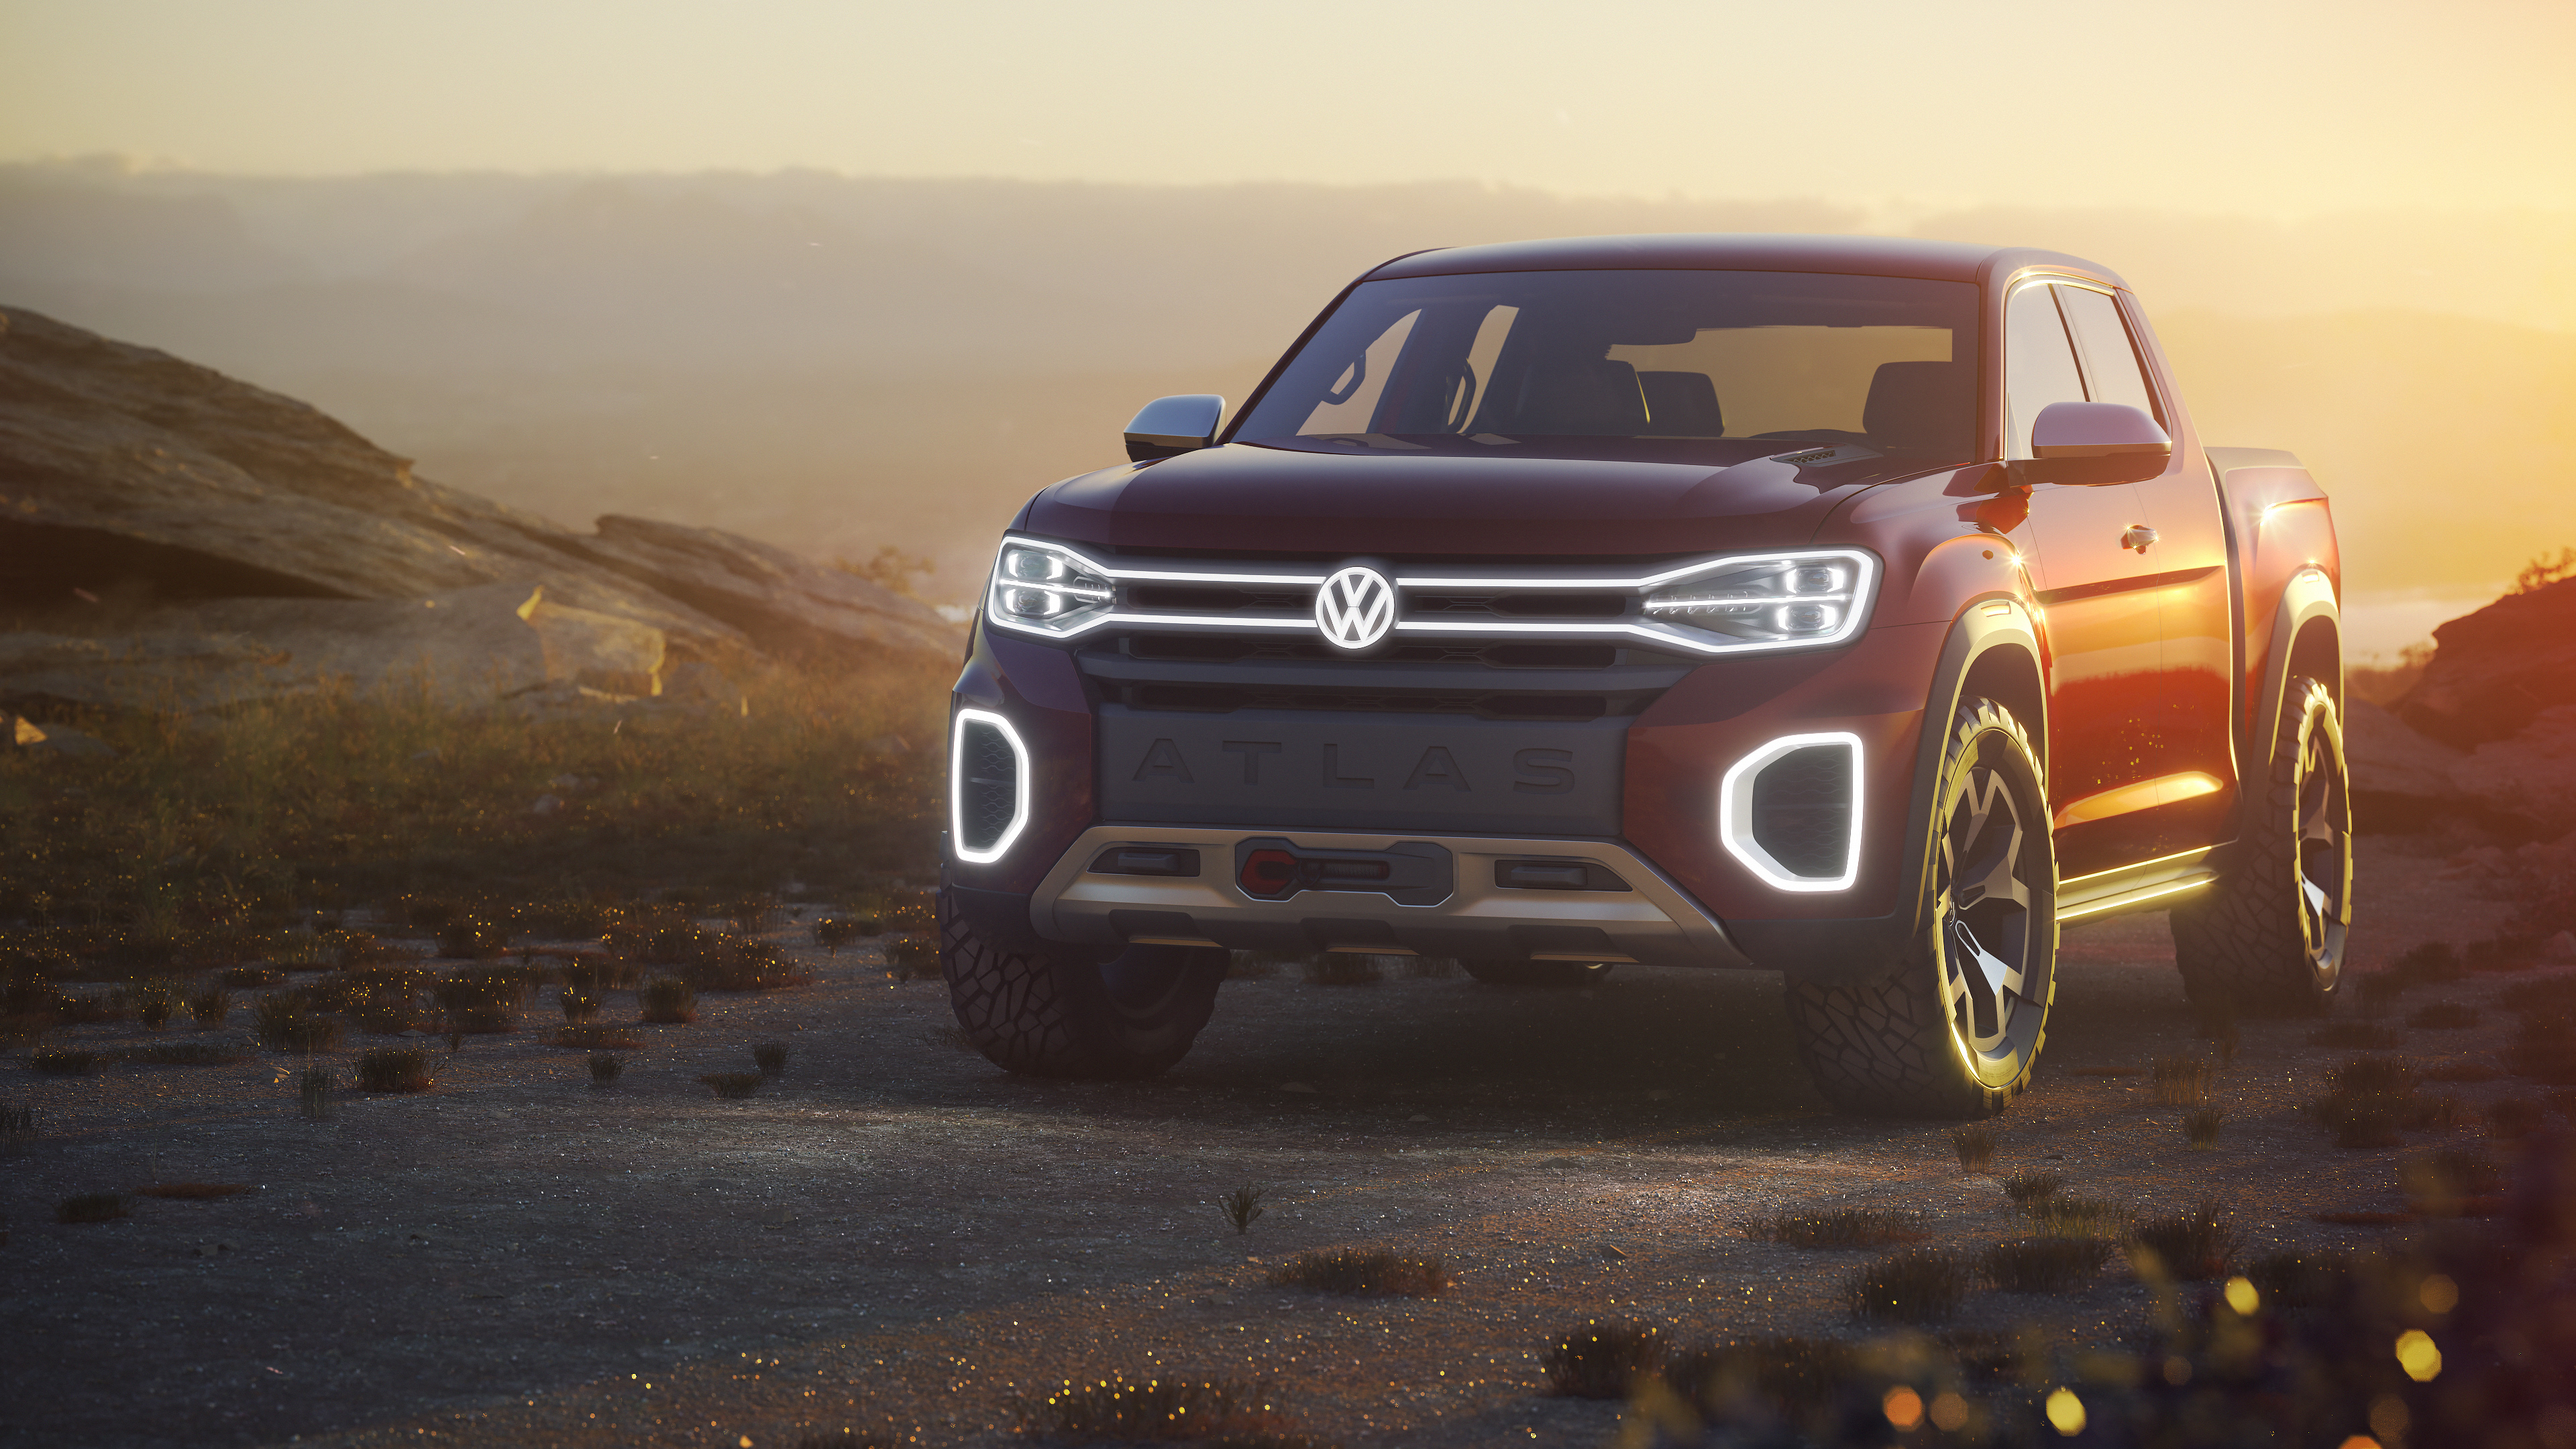 2018 Volkswagen Atlas Tanoak Pickup Truck Concept 4K Wallpapers